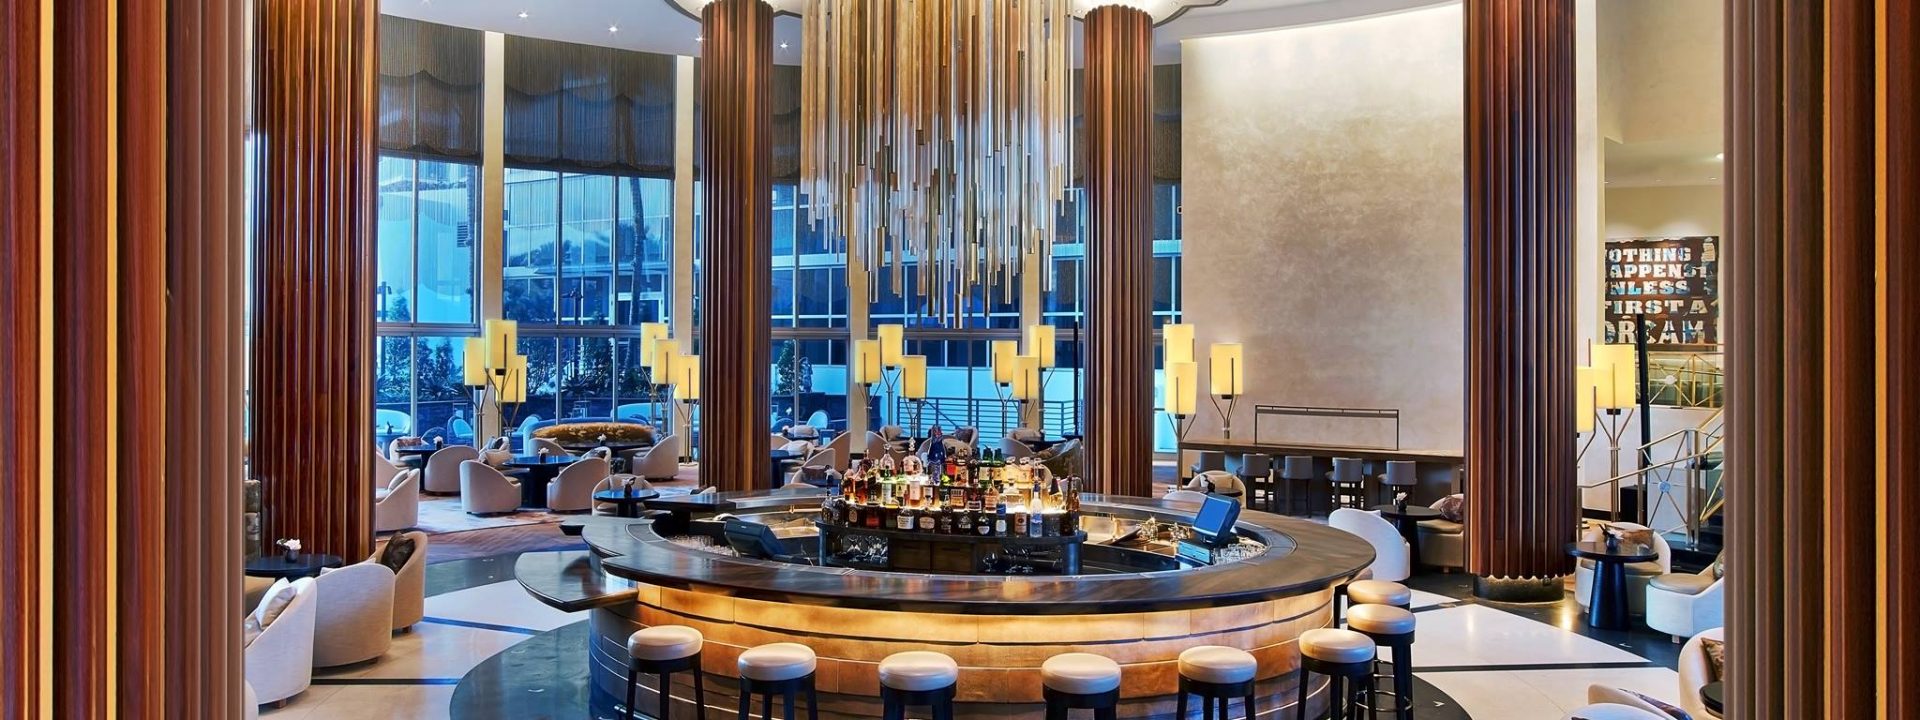 Top 5 Miami Hotel Bars